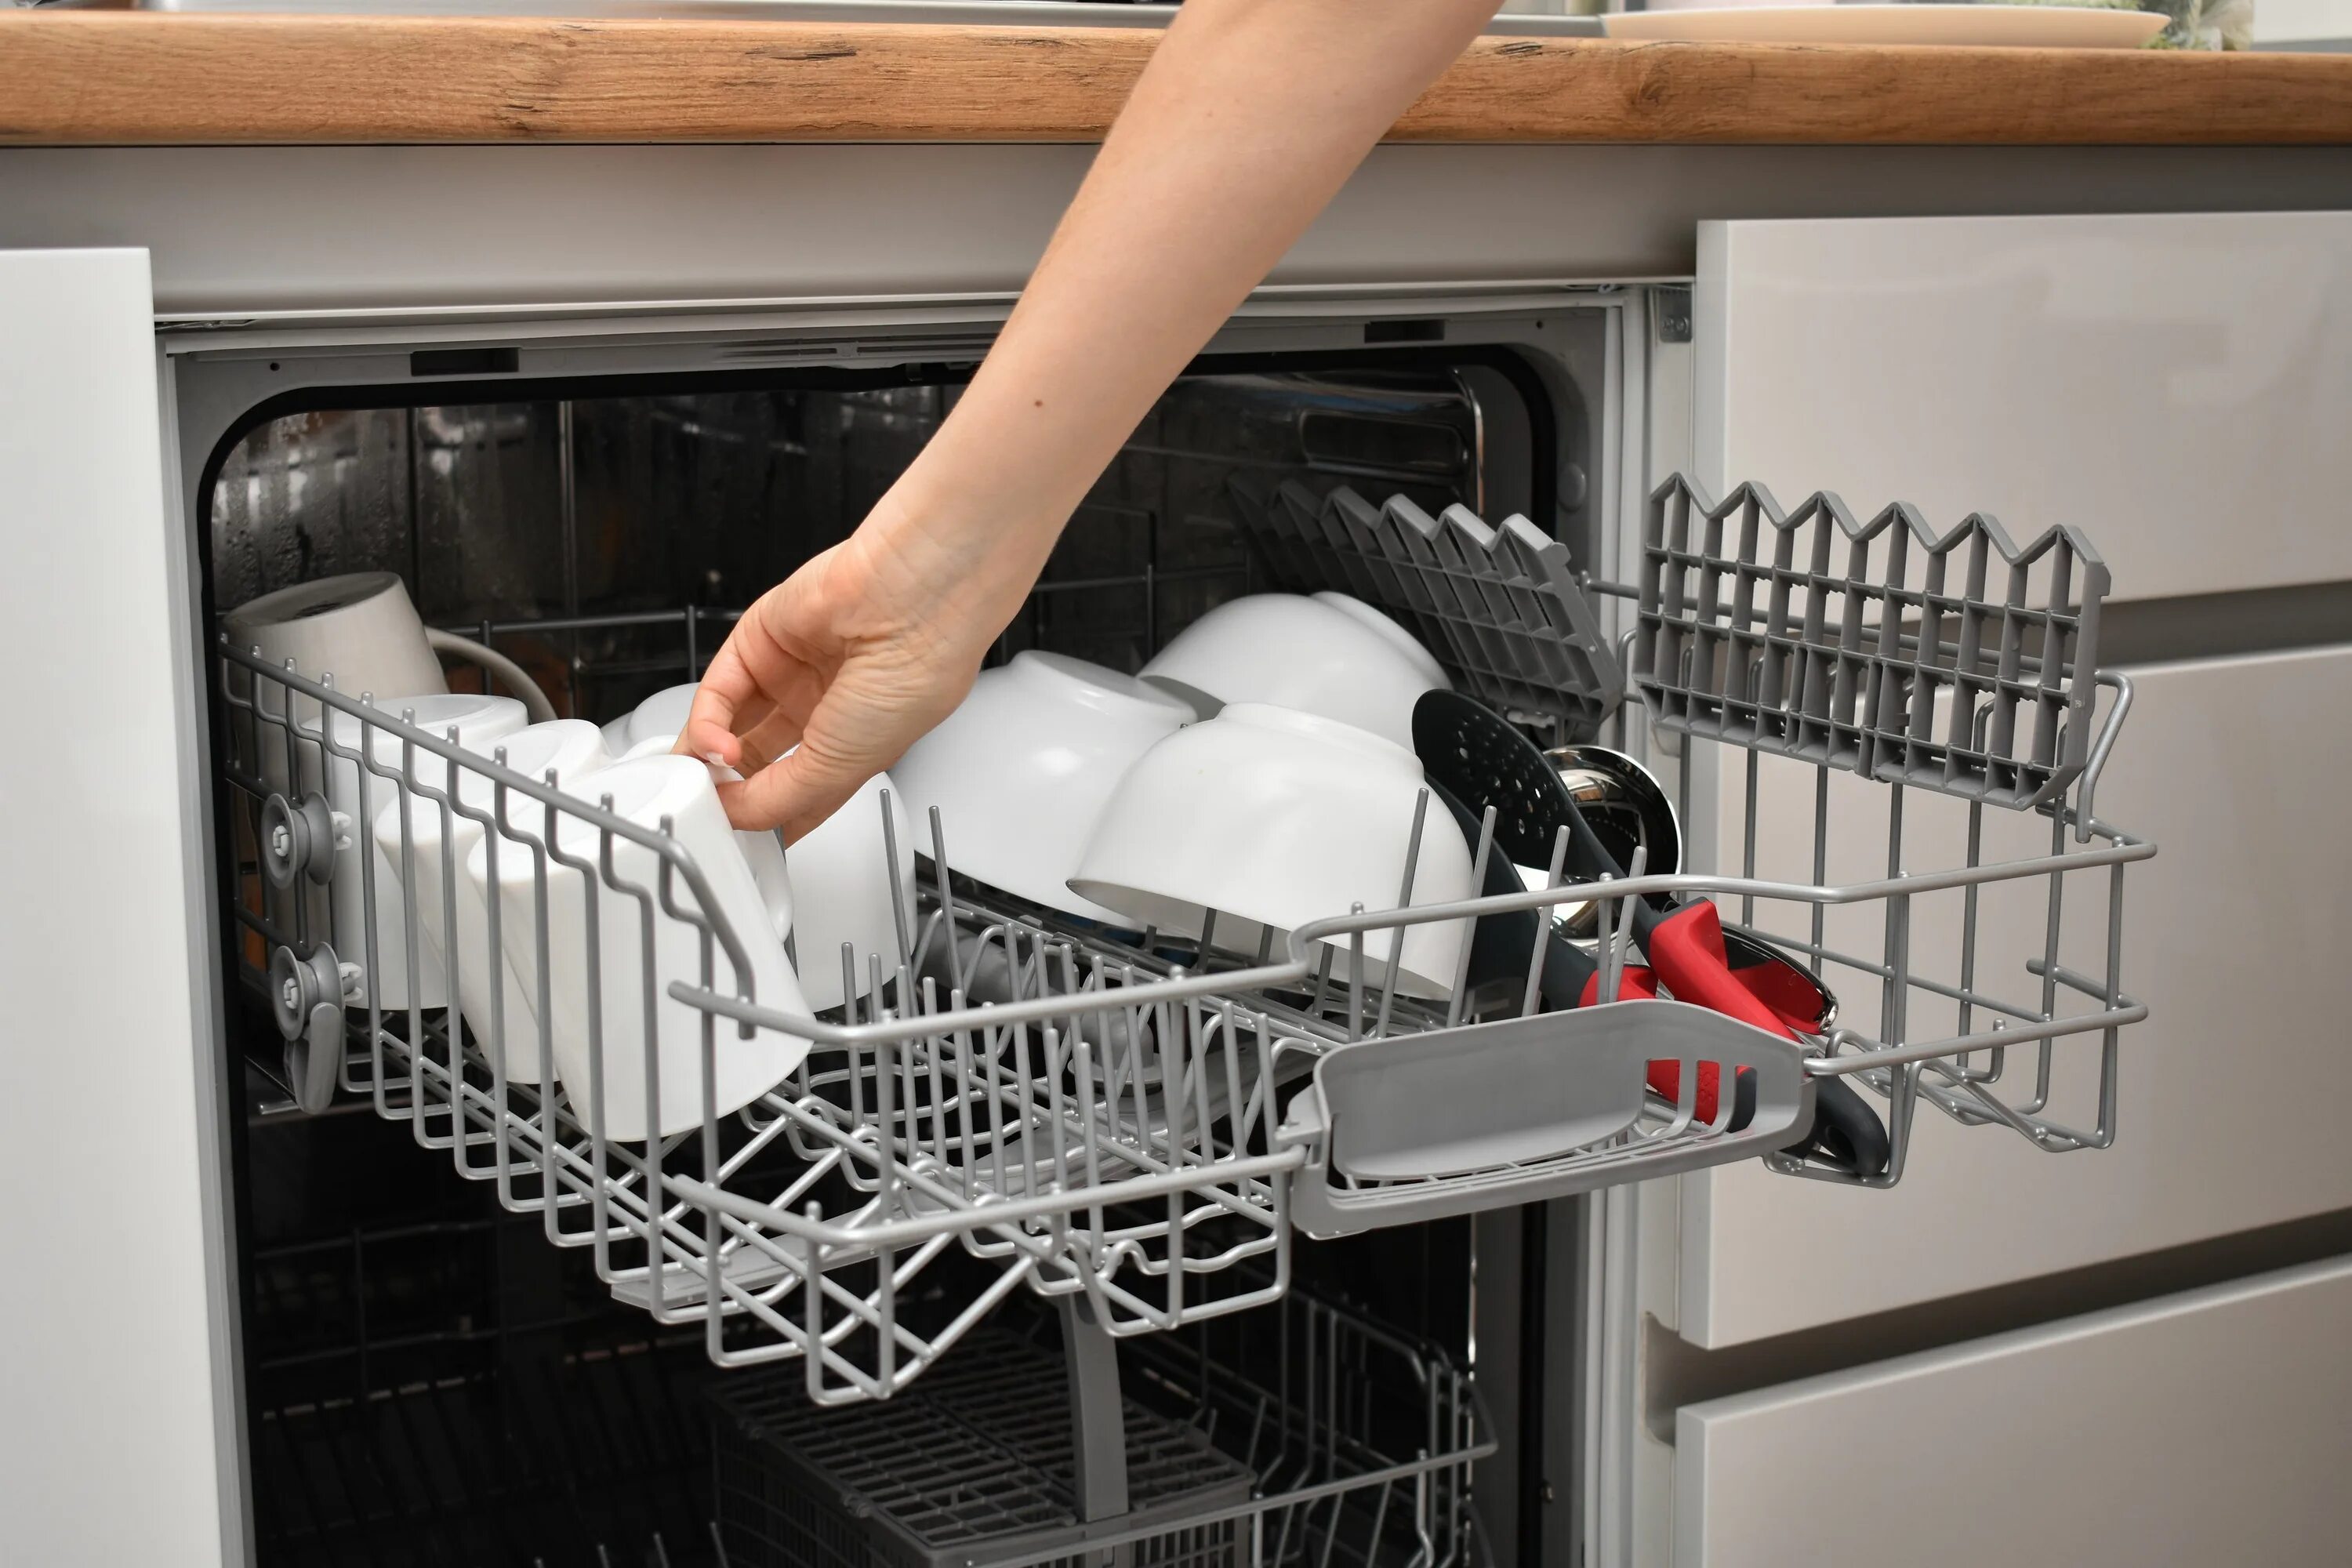 Как отмыть посудомойку. Посудомоечная машина на кухне. Посуда в посудомоечной машине. Сетка для посудомоечной машины. Крепление посудомоечной машины к мебели.